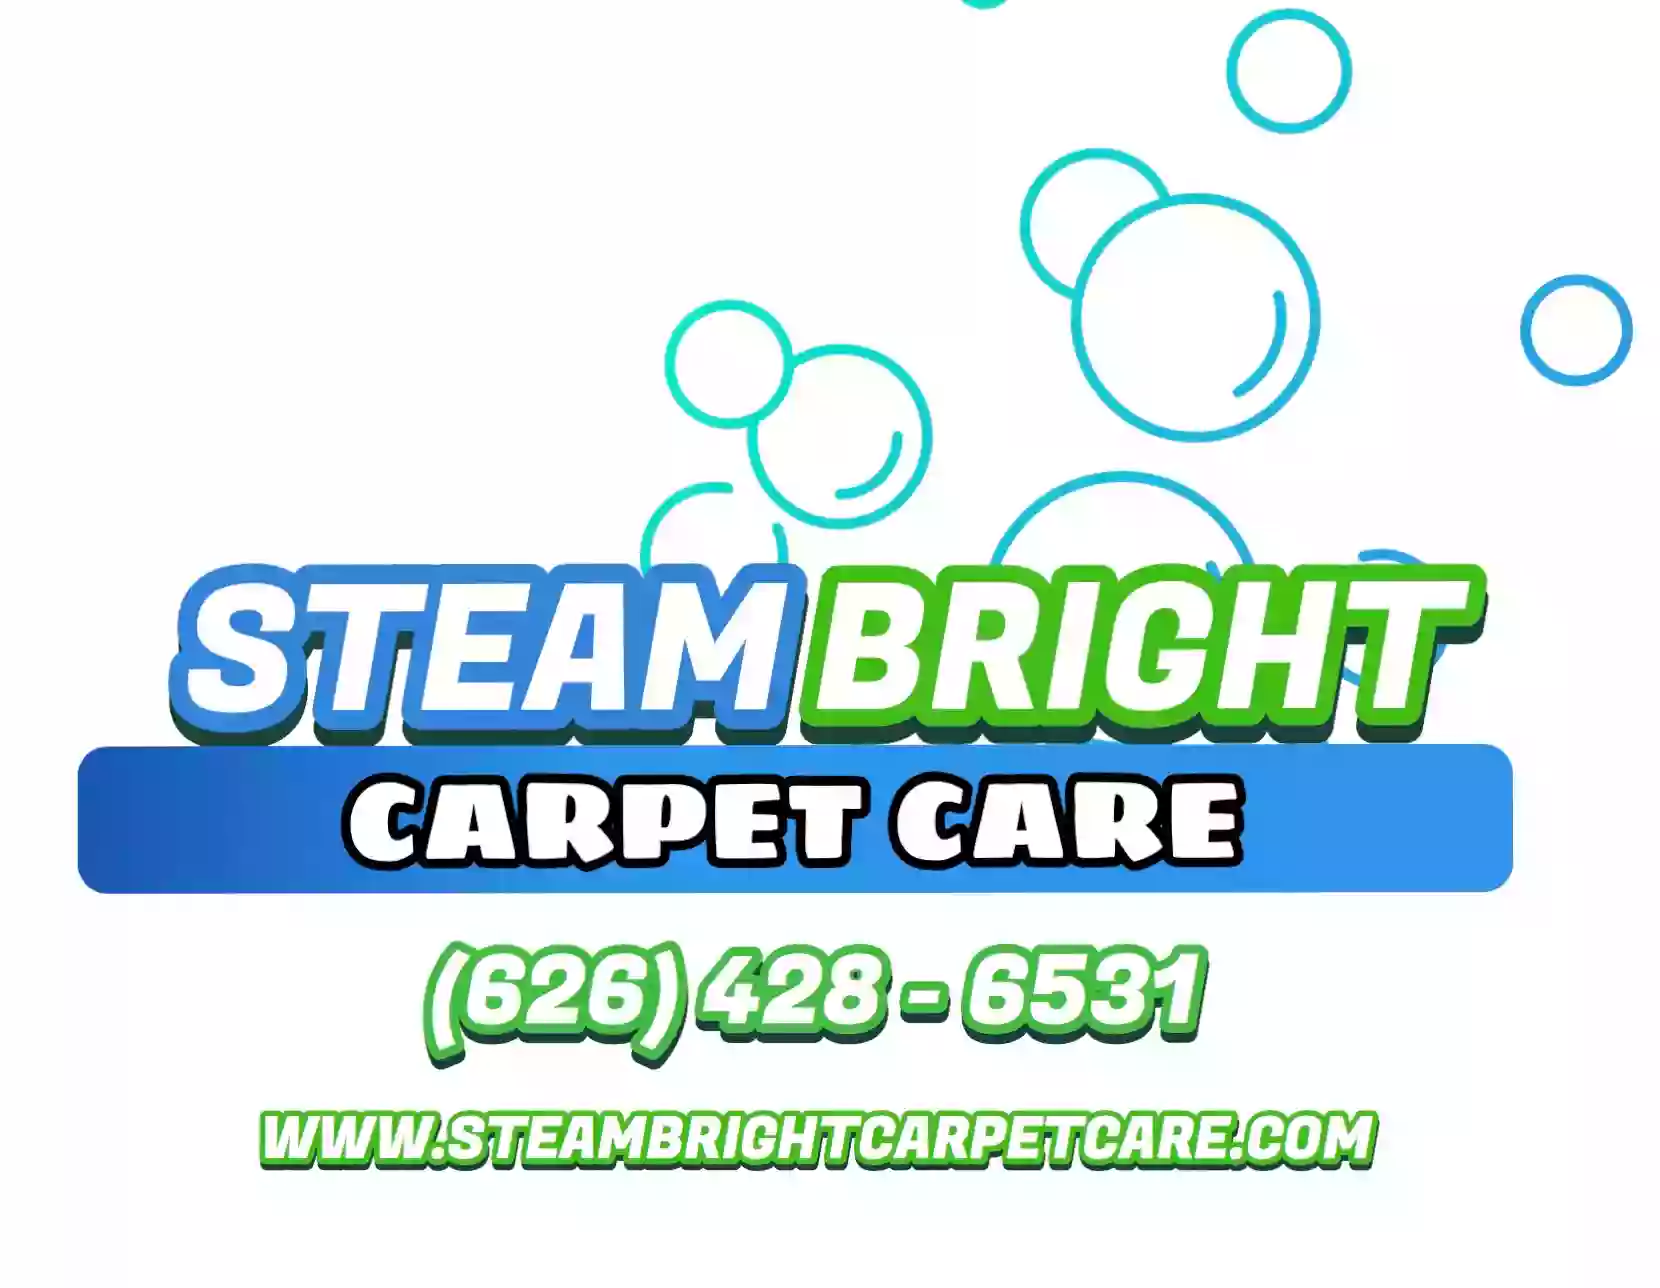 SteamBright Carpet Care